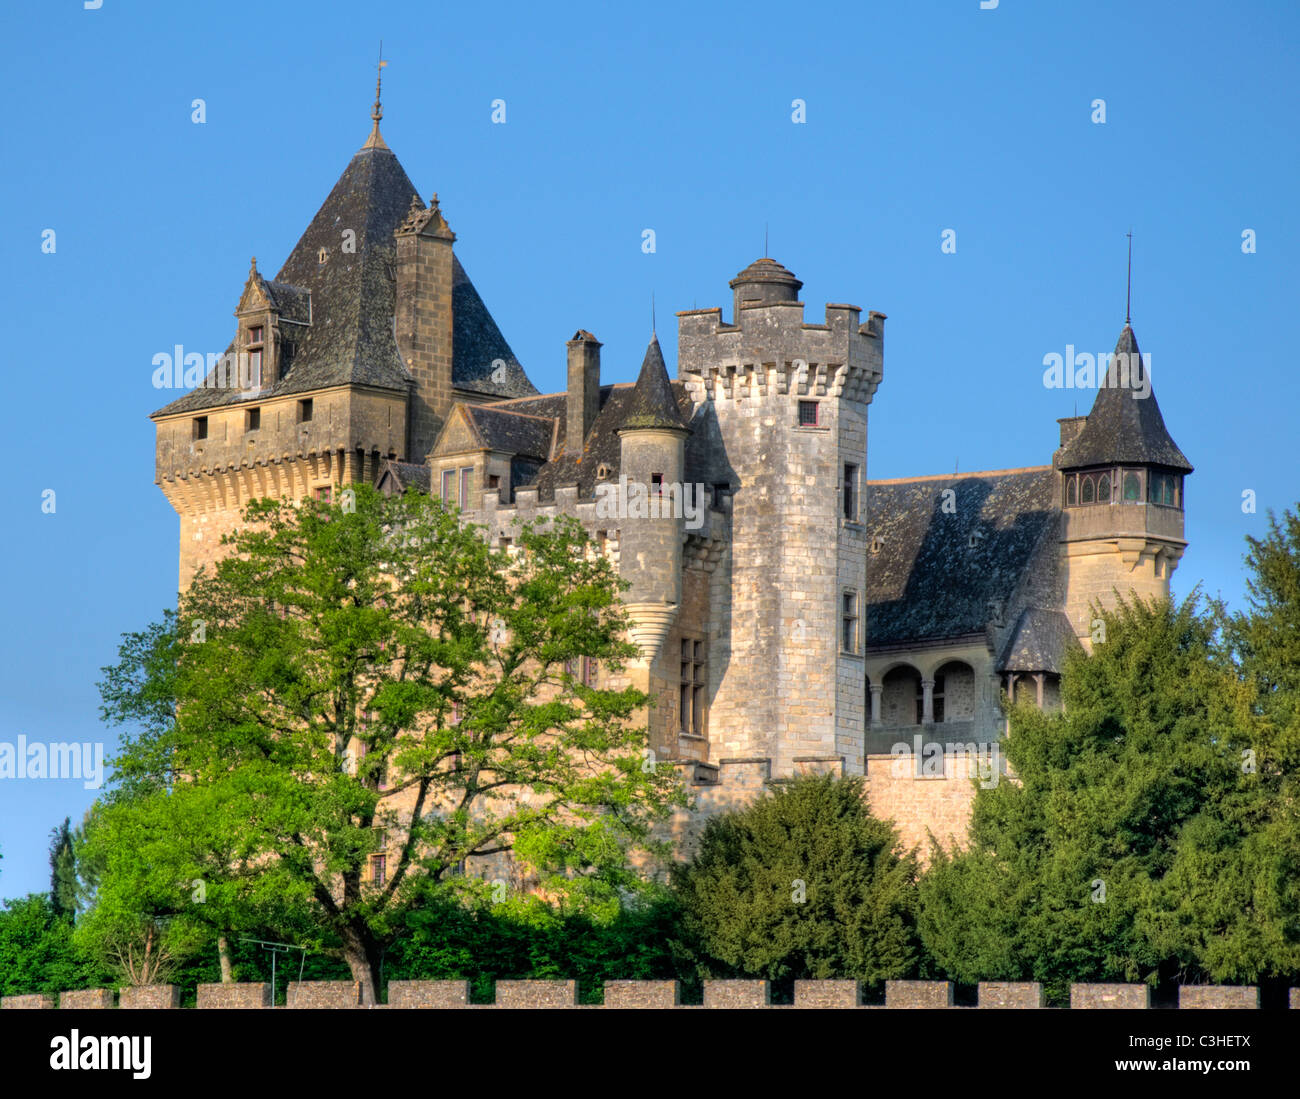 The Chateau de Montfort, Dordogne France EU Stock Photo